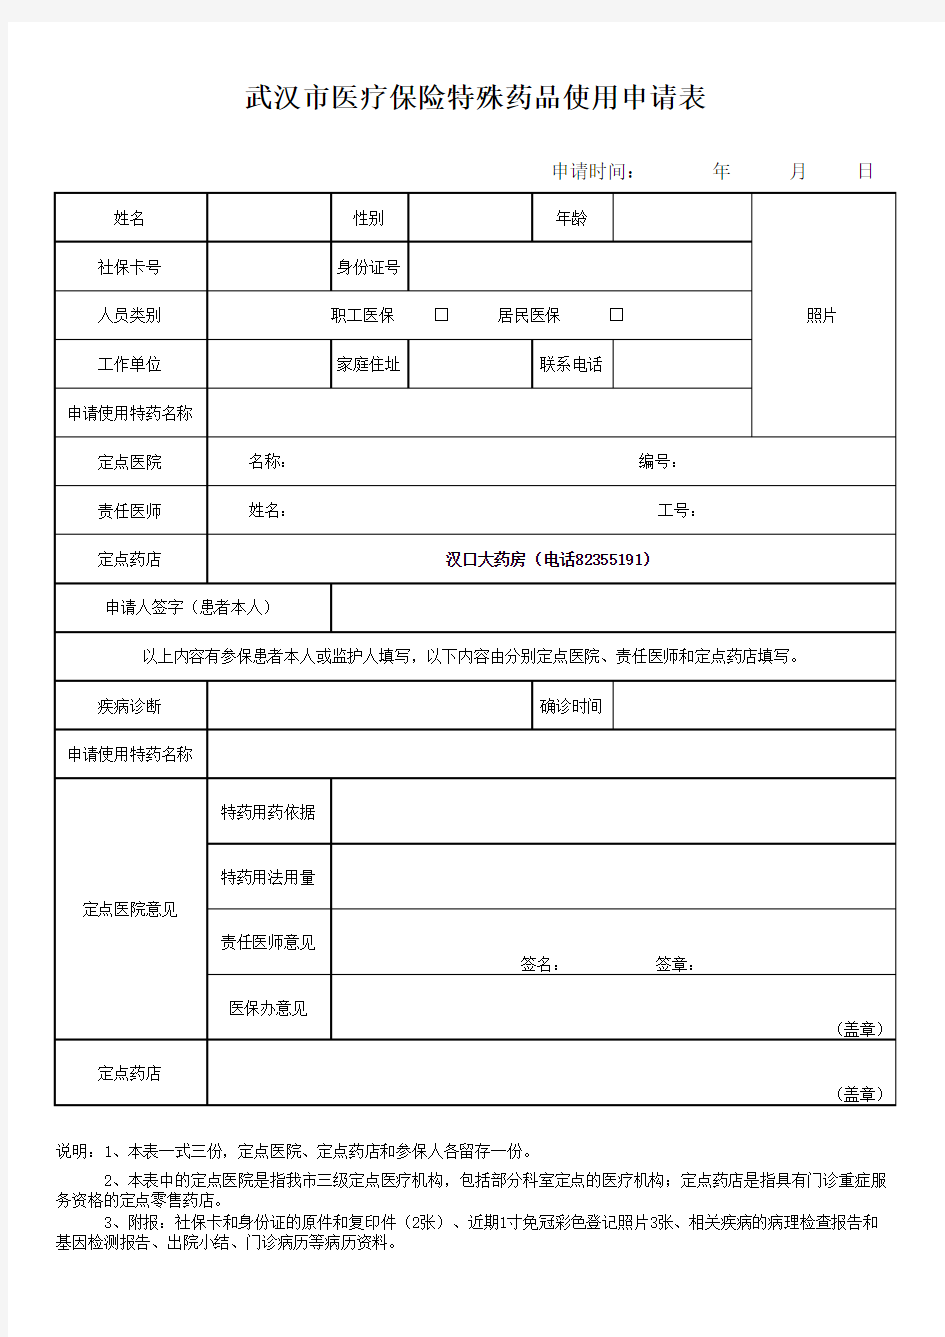 武汉市医疗保险特殊药品申请表教学文稿